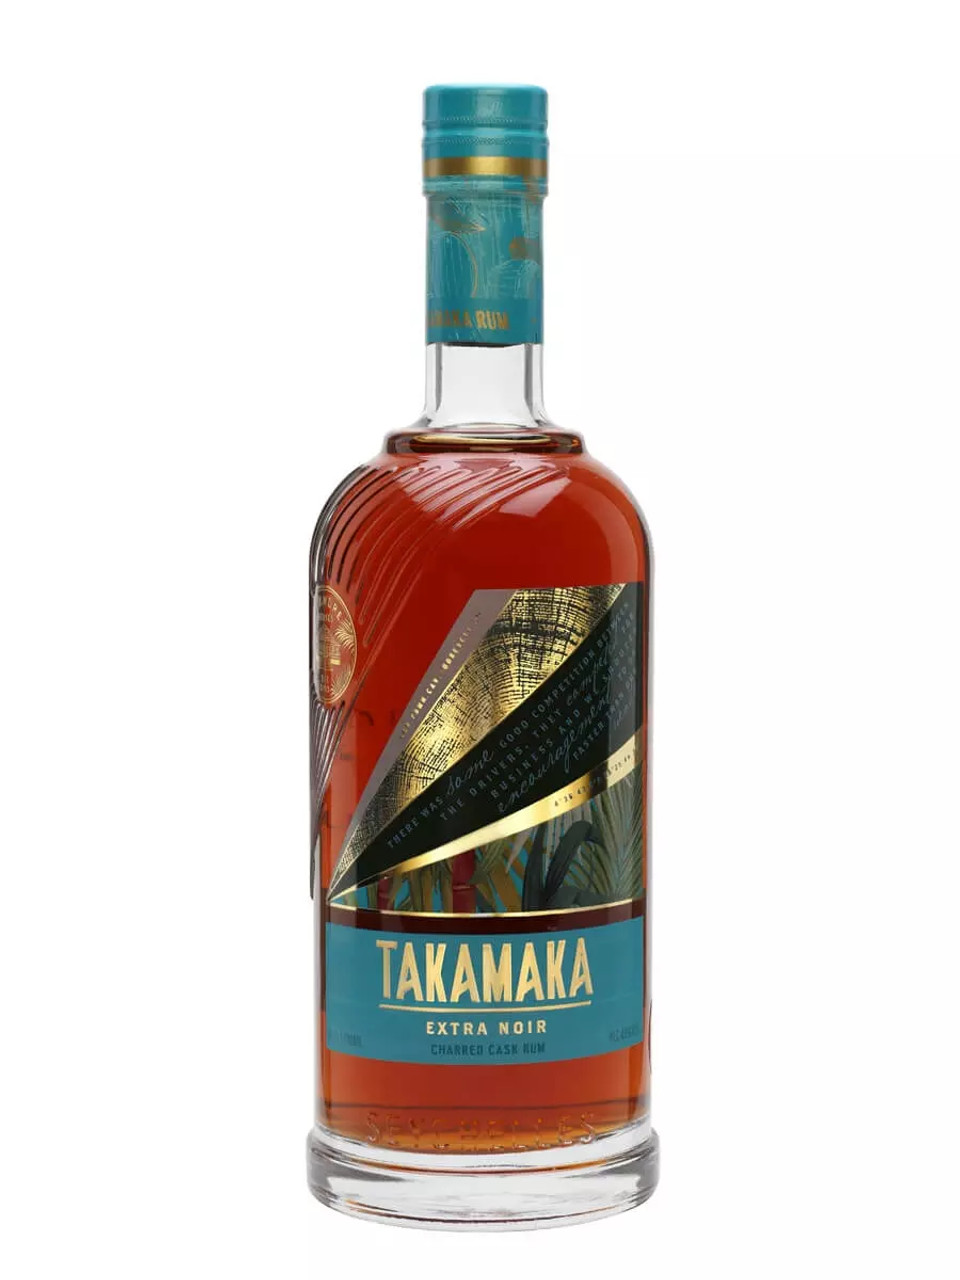 Seychelles Takamaka Noir Extra Andre St Rum Series